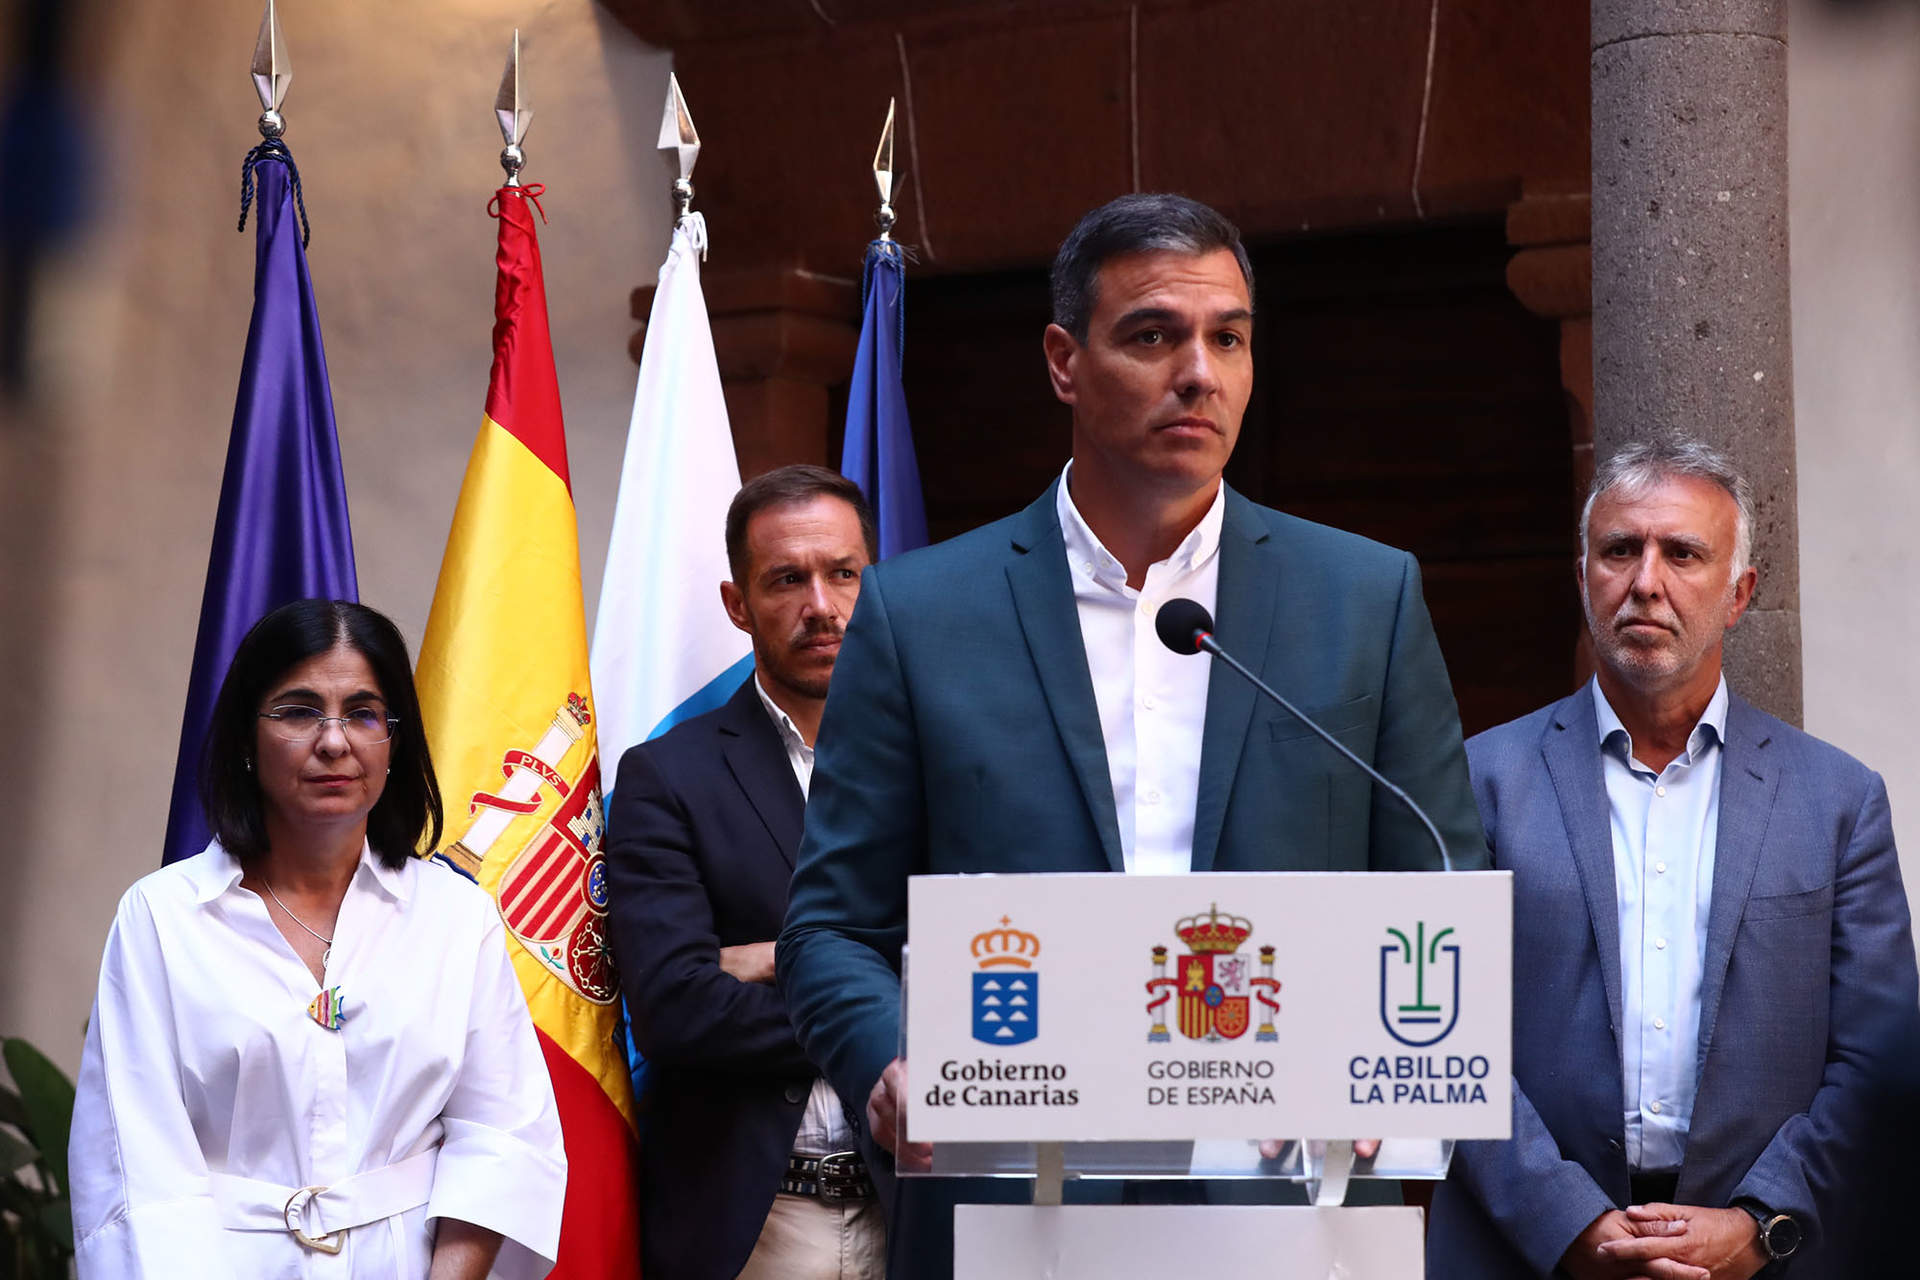 El desmentido de Sánchez sobre la crisis de Gobierno inquieta aún más a los ministros